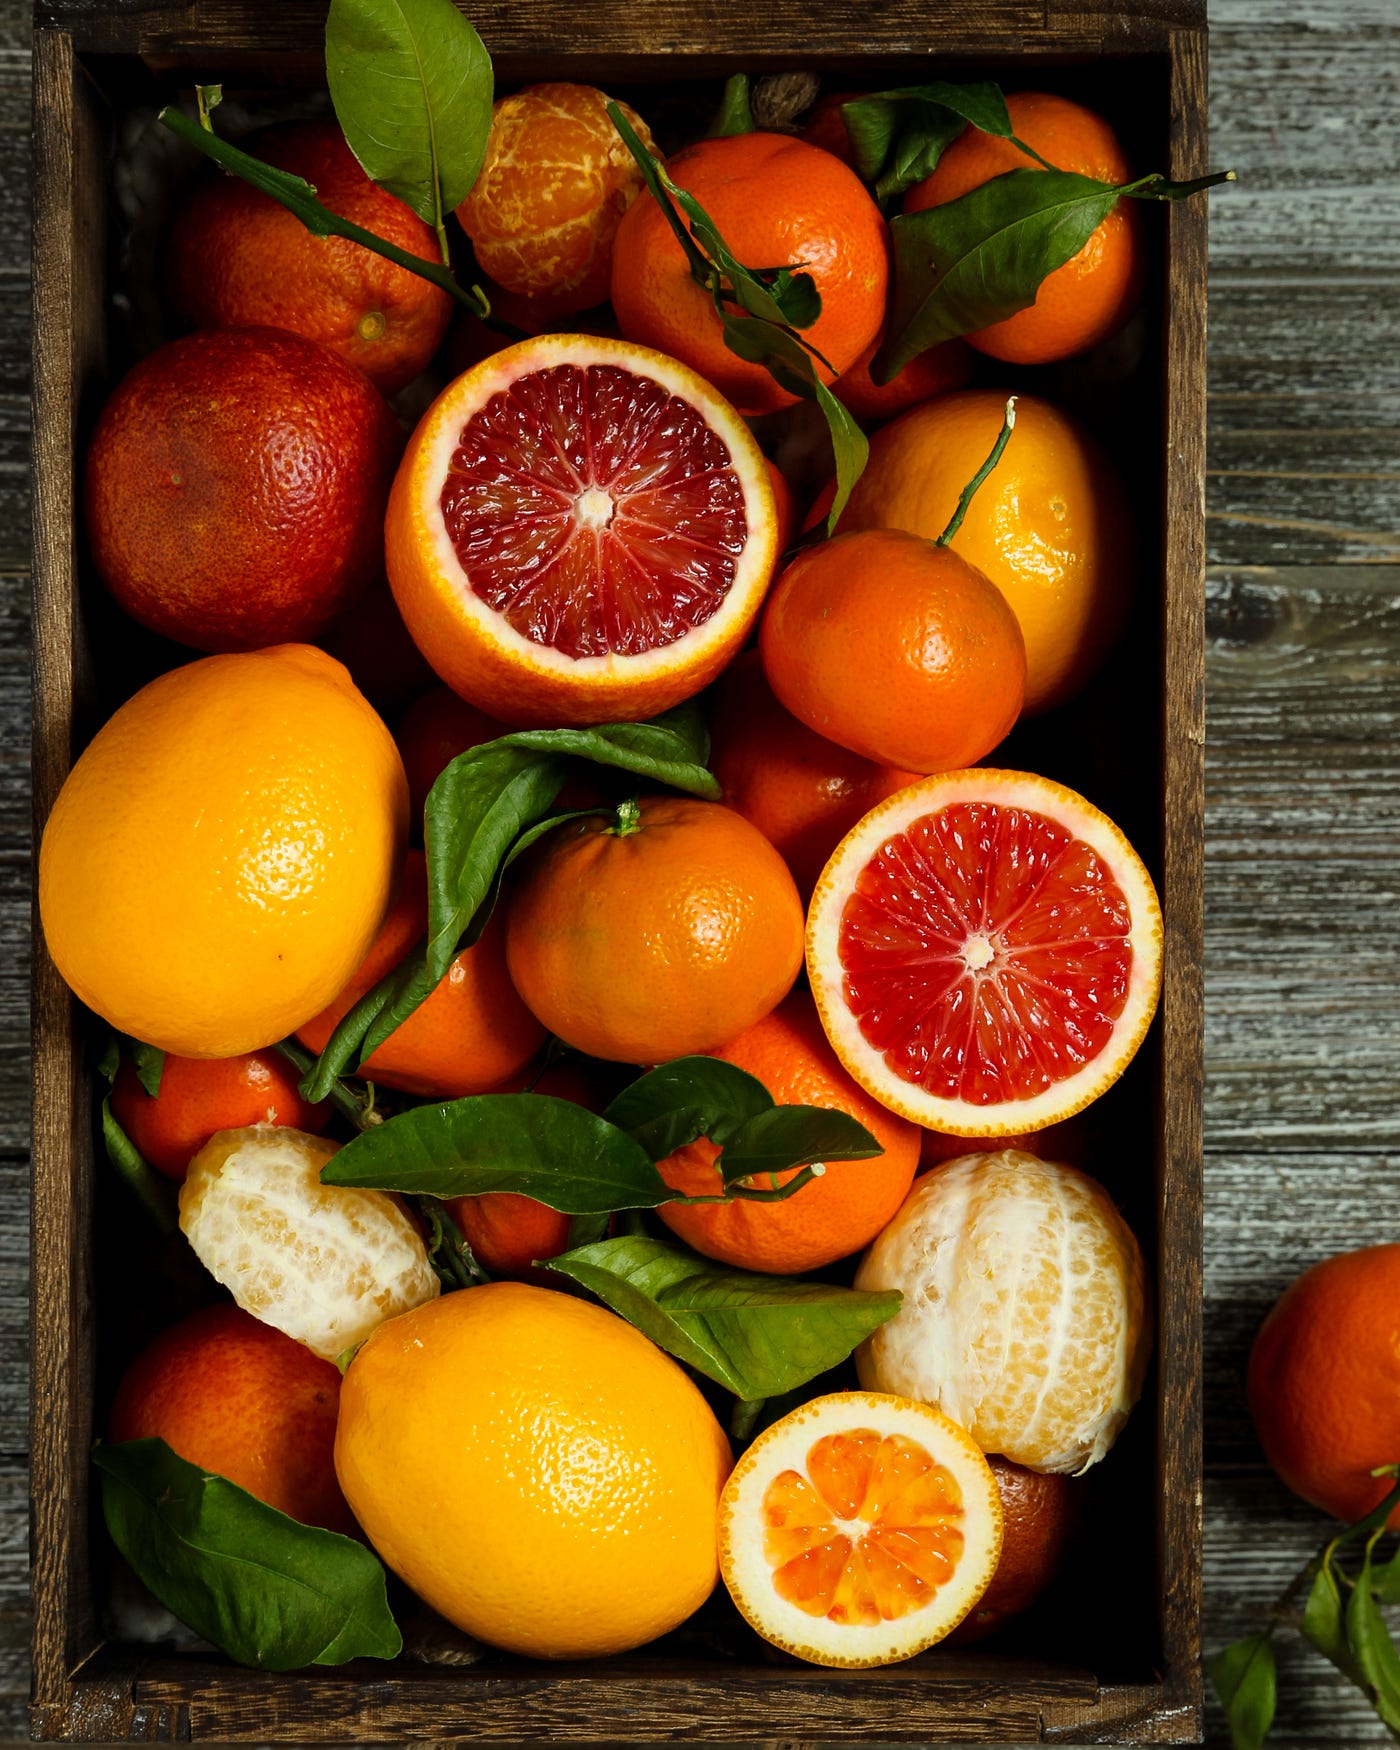 A box of citrus fruit